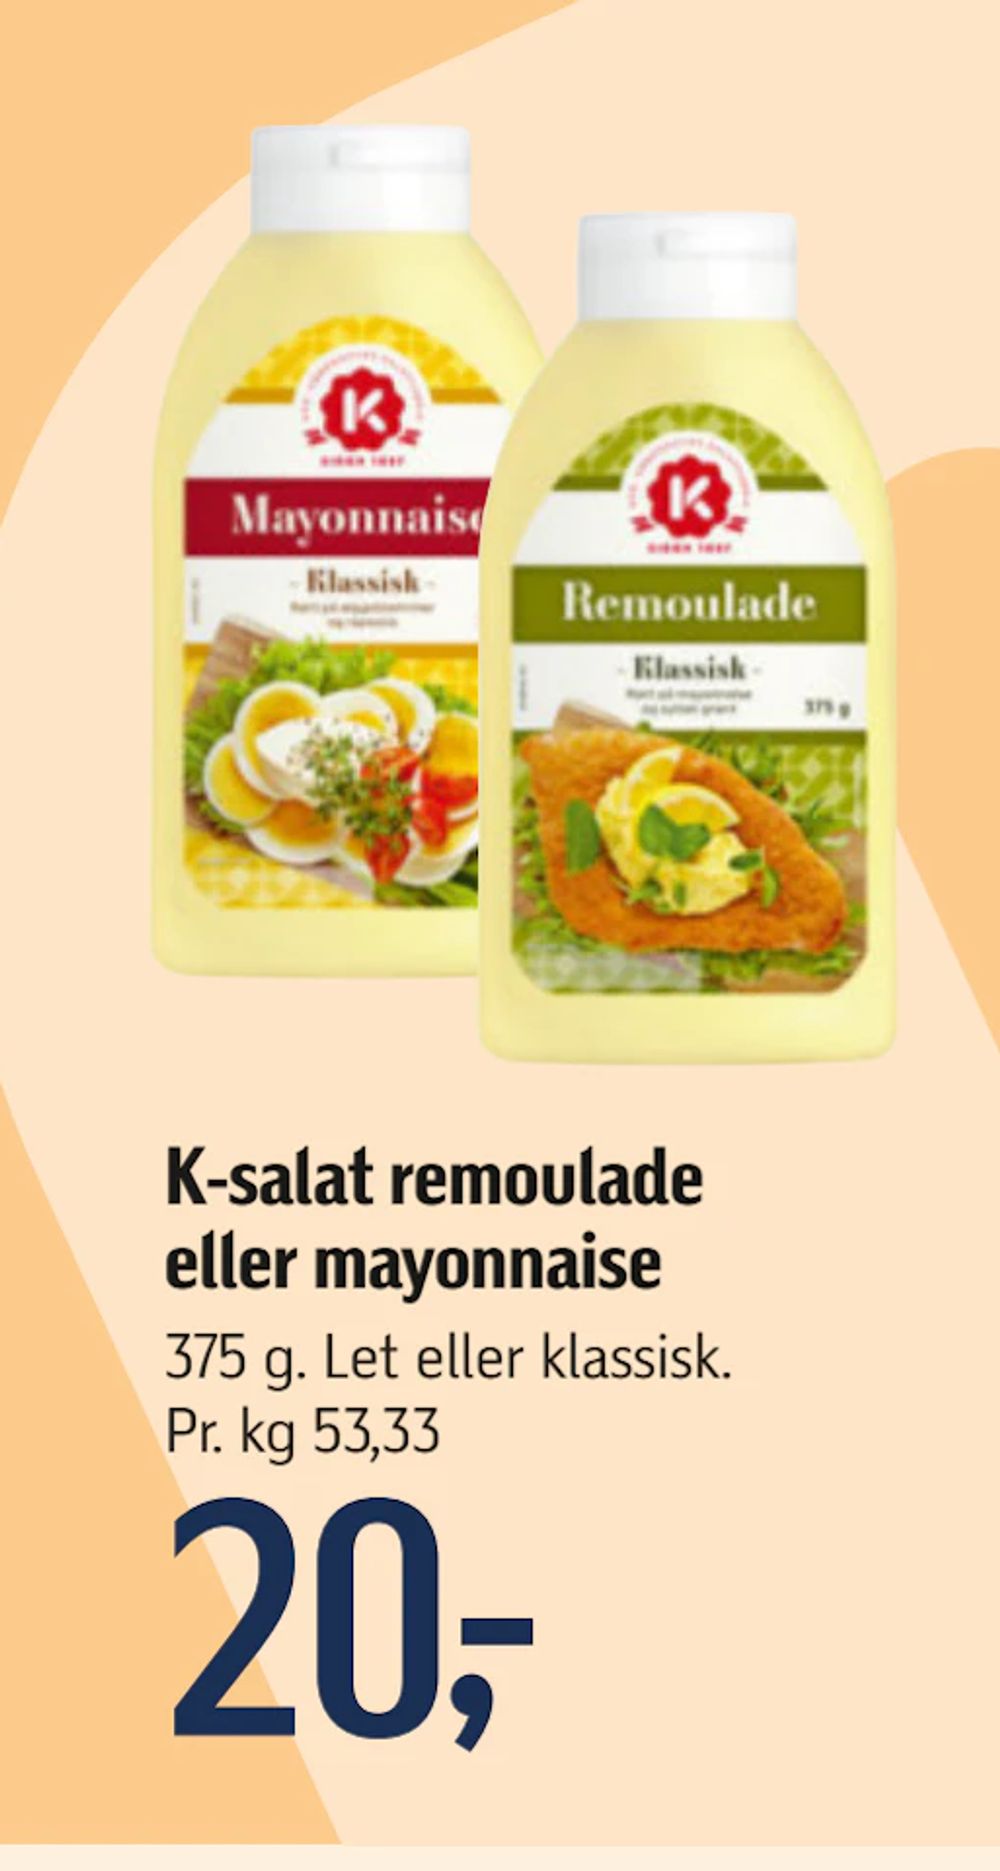 Tilbud på K-salat remoulade eller mayonnaise fra føtex til 20 kr.